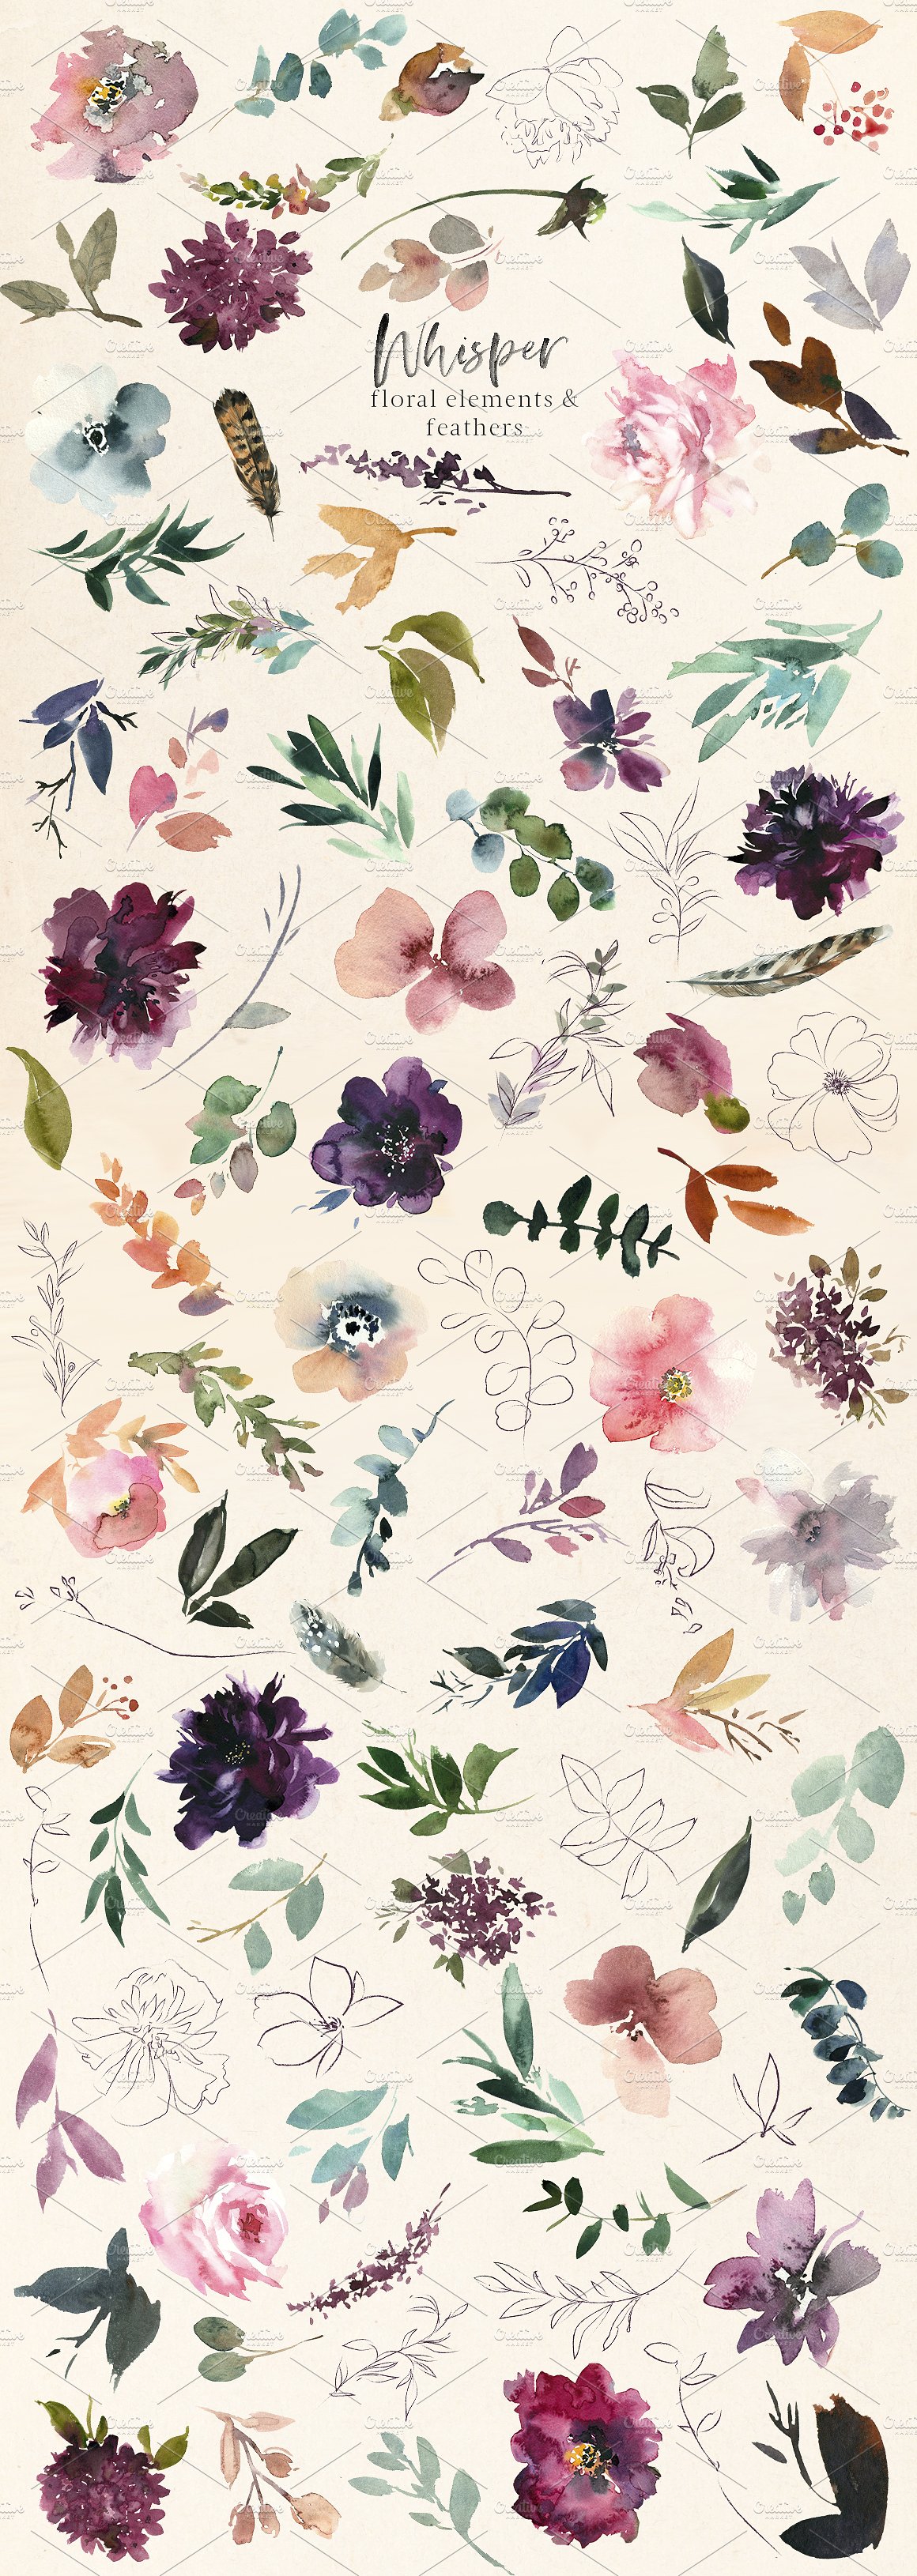 浪漫暗色调水彩花卉剪贴画 Whisper Watercolor Floral Clipart插图(9)